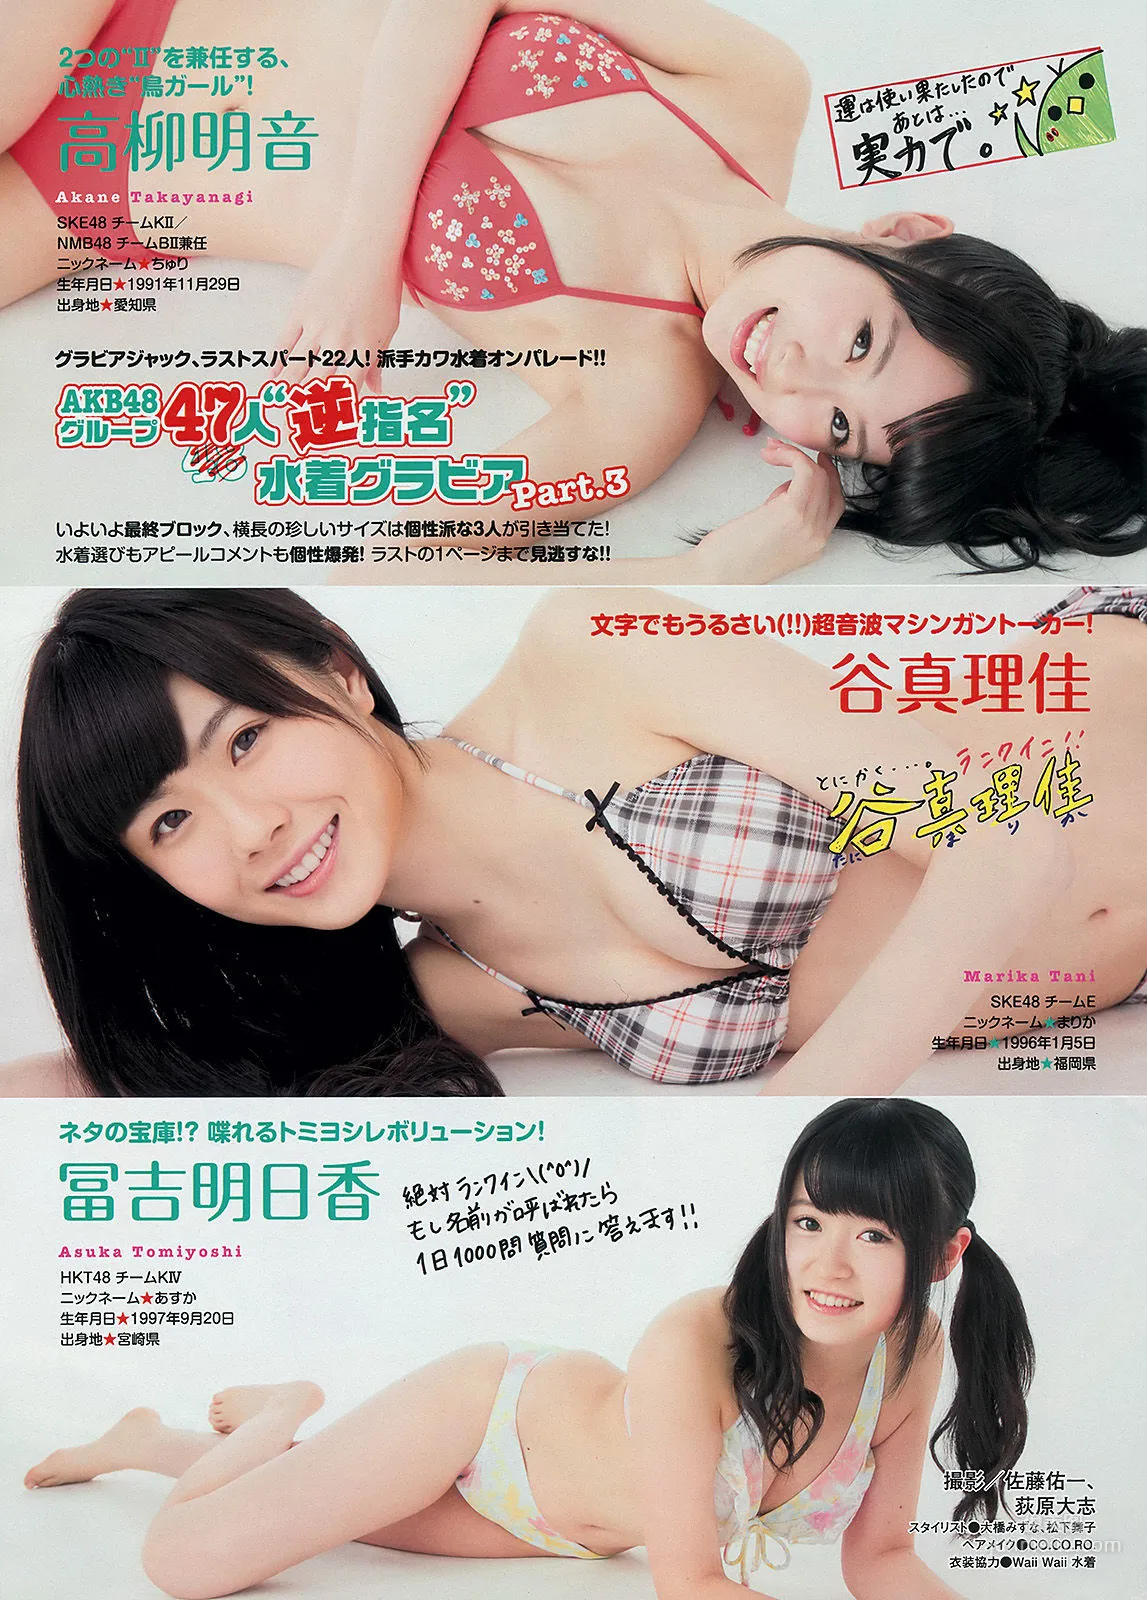 [Young Magazine] 渡辺麻友 川栄李奈 2401年No.27 写真杂志13